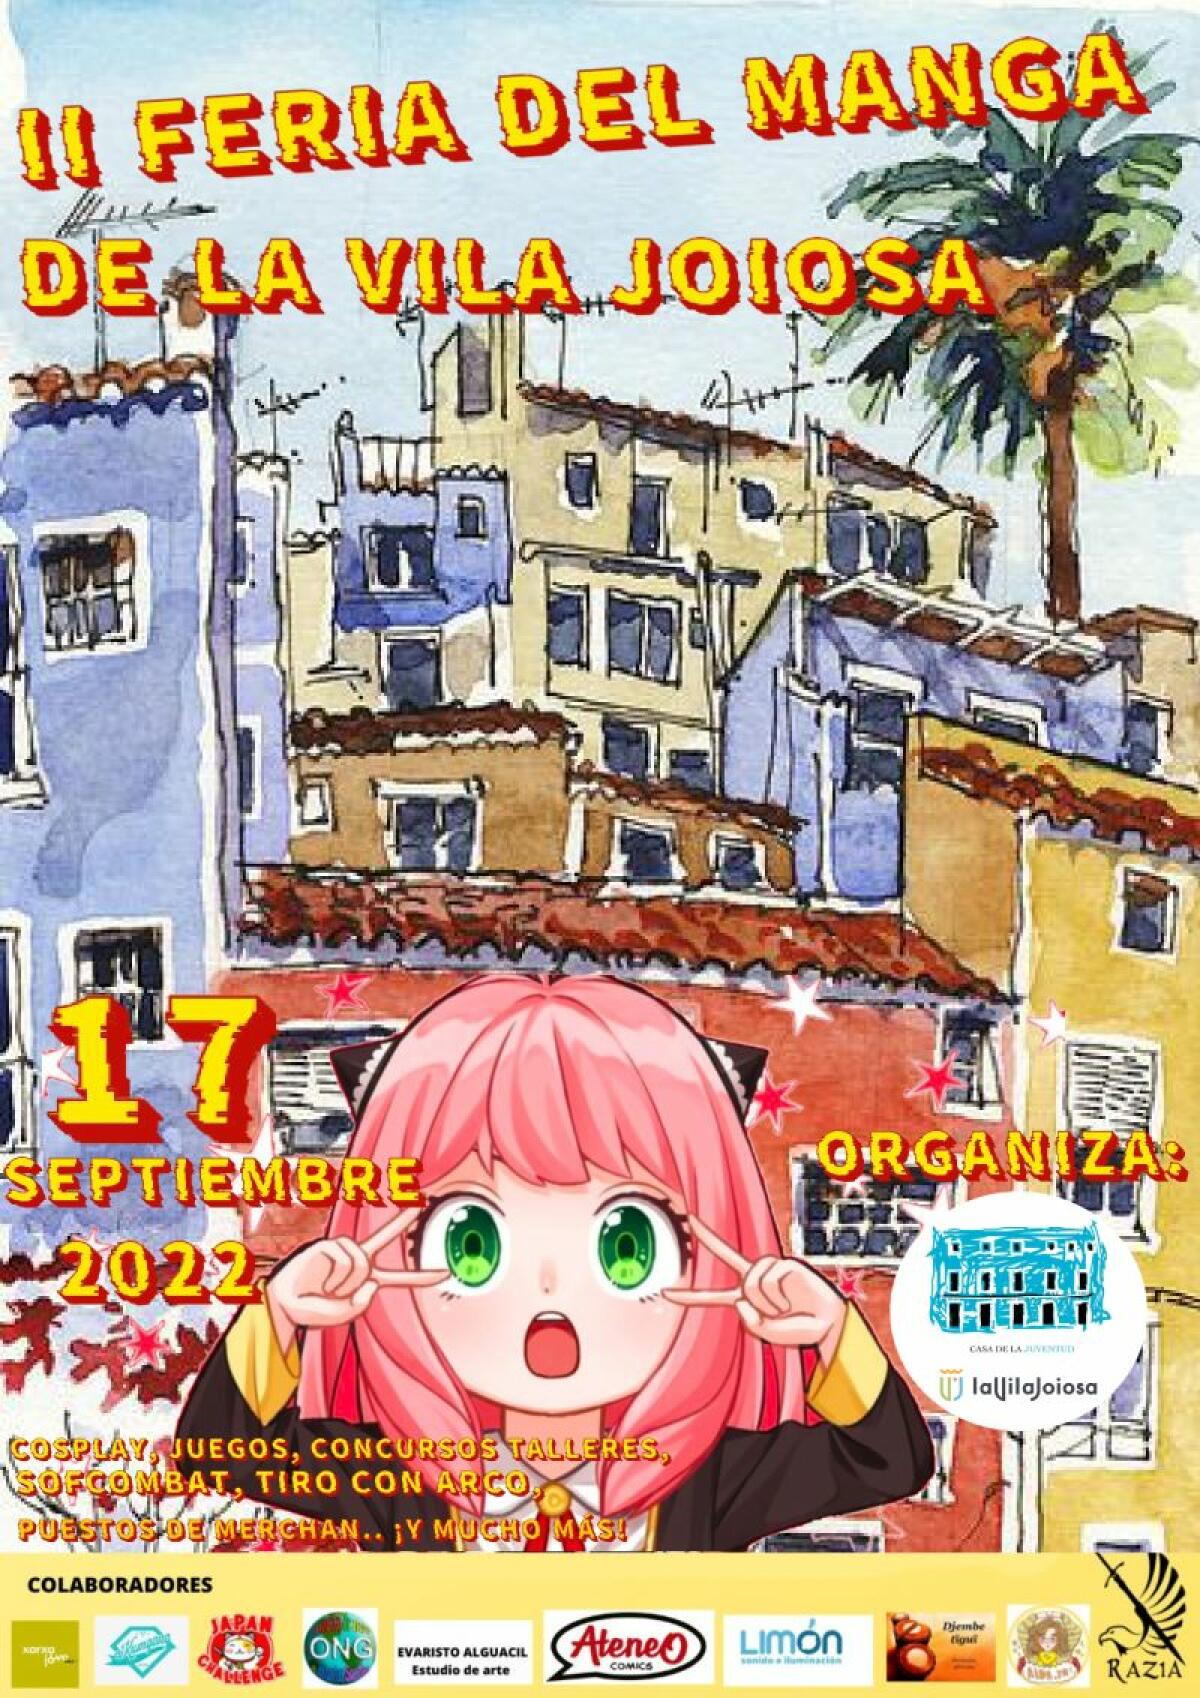 La II Feria del Manga y Cultura Japonesa de la Vila Joiosa ya tiene cartel oficial y programa de actividades